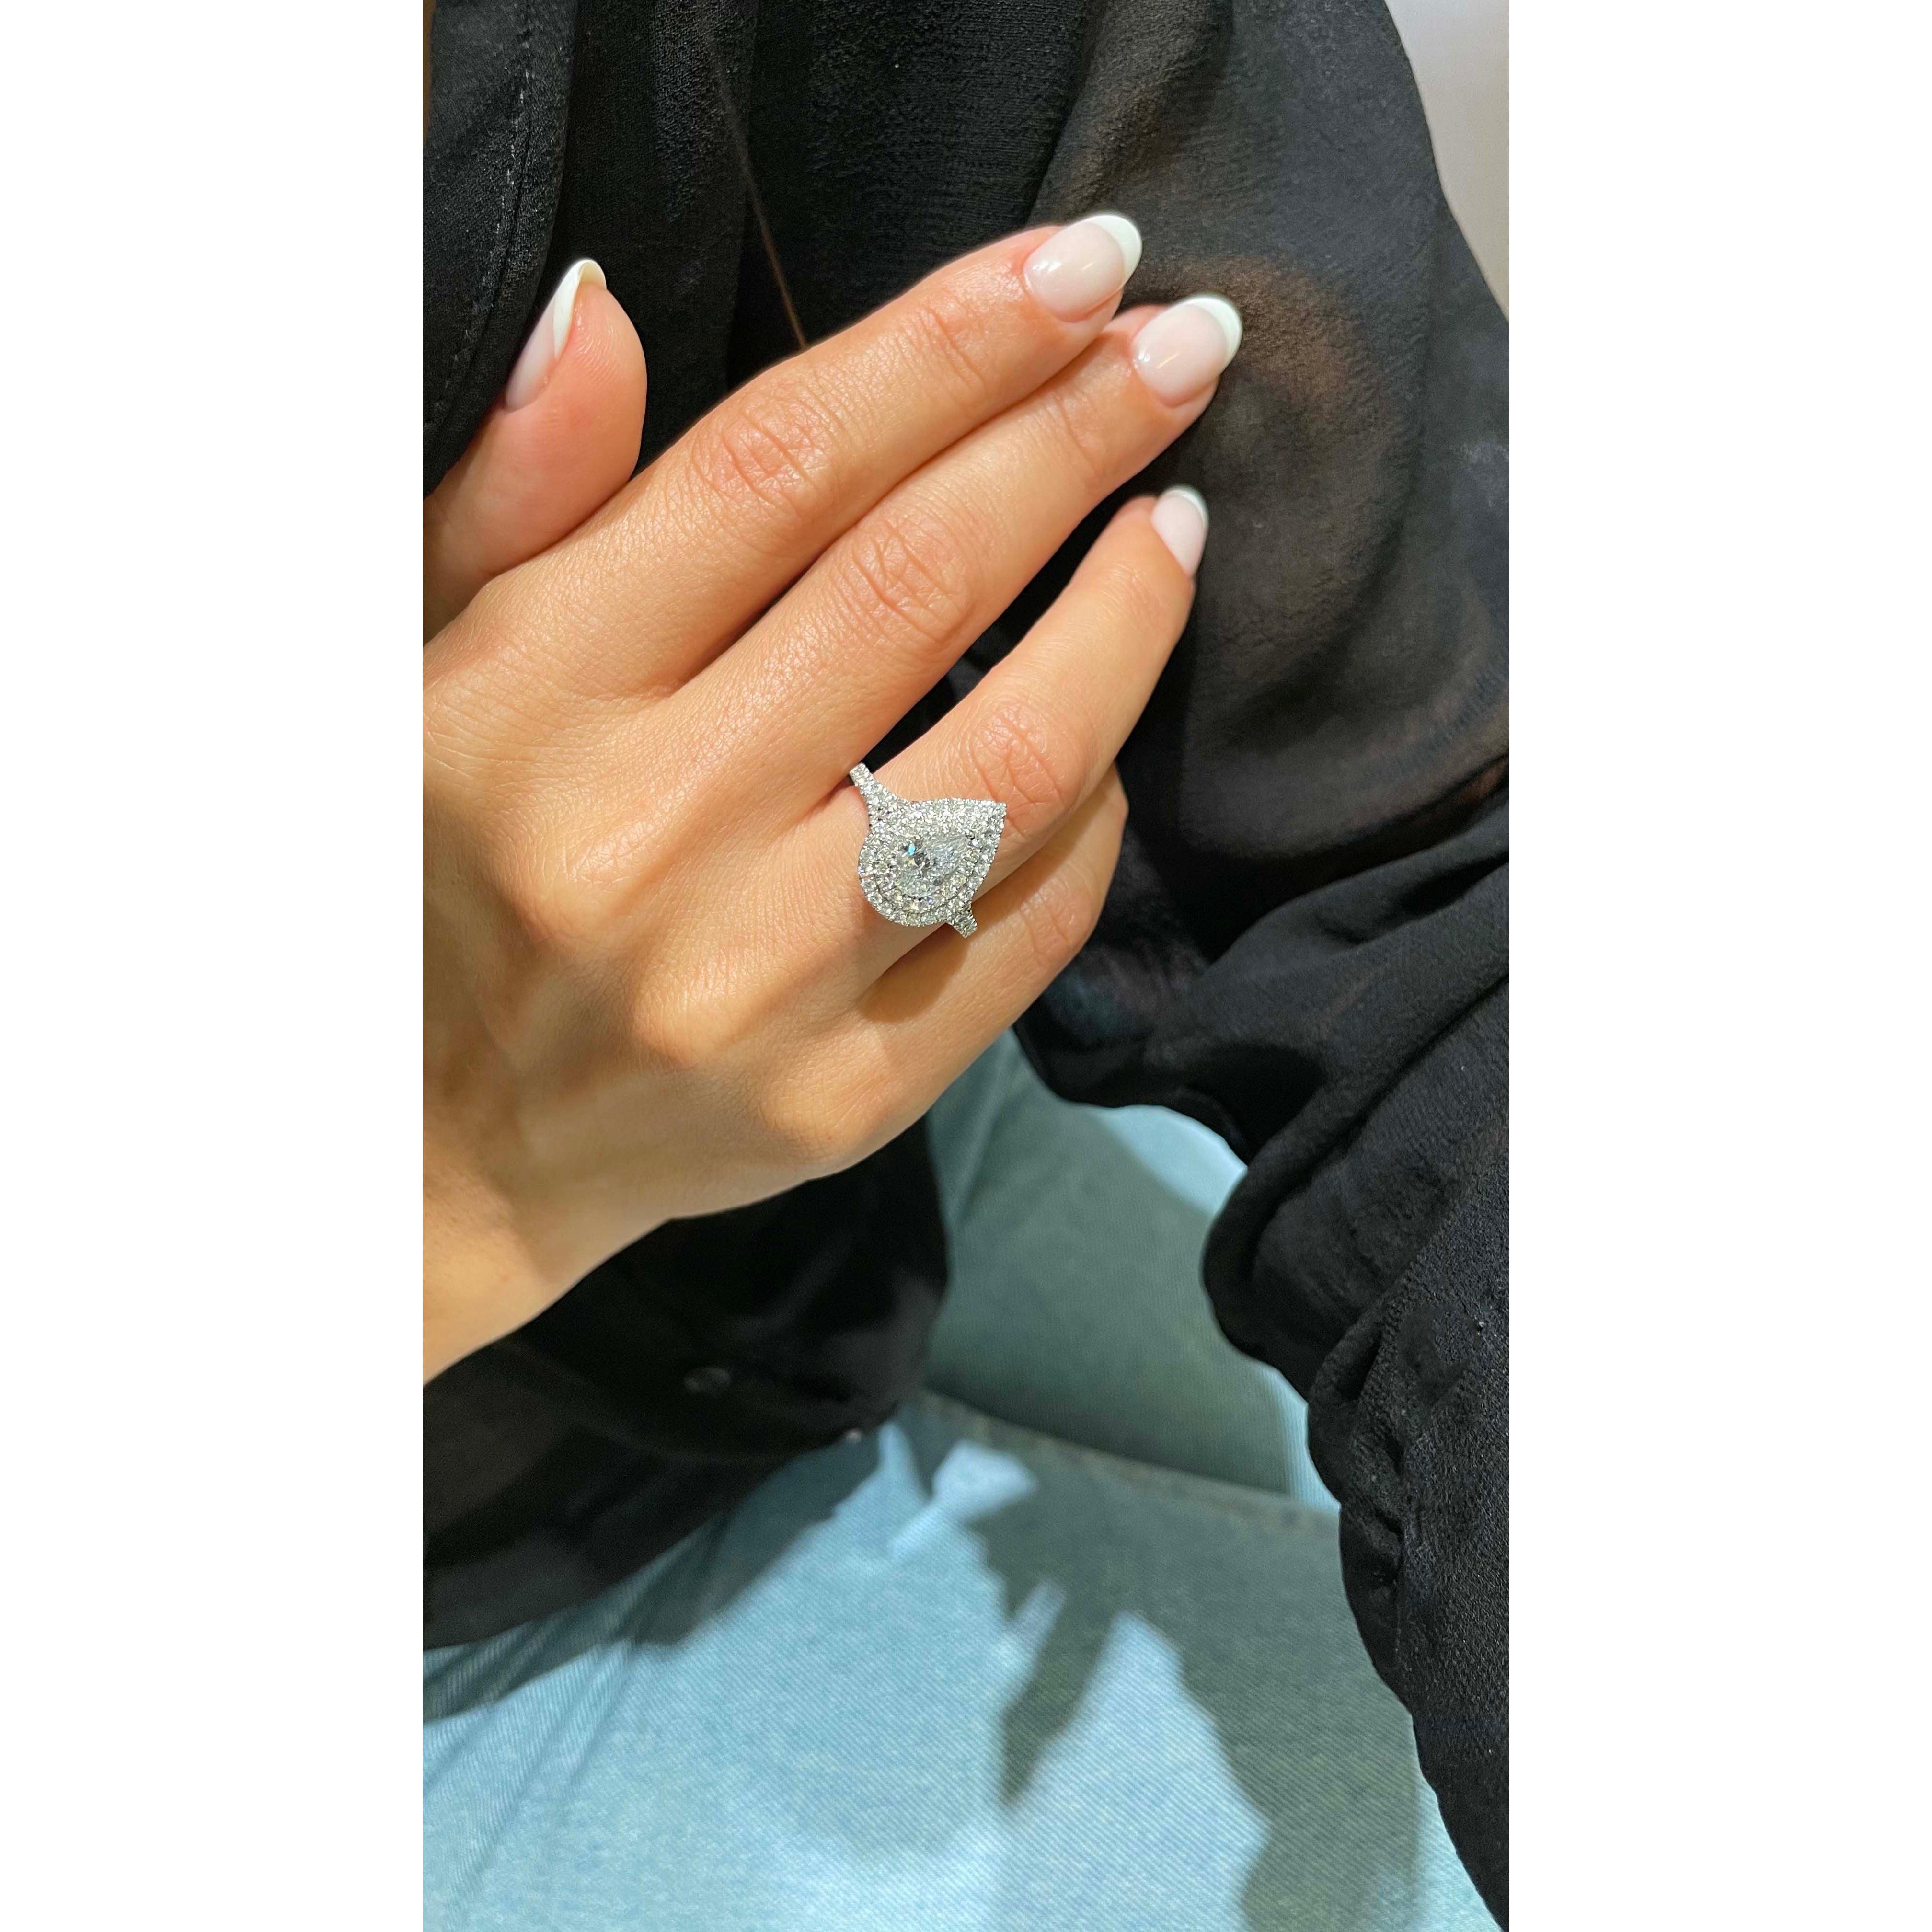 Melanie Diamond Engagement Ring   (1.75 Carat) -Platinum